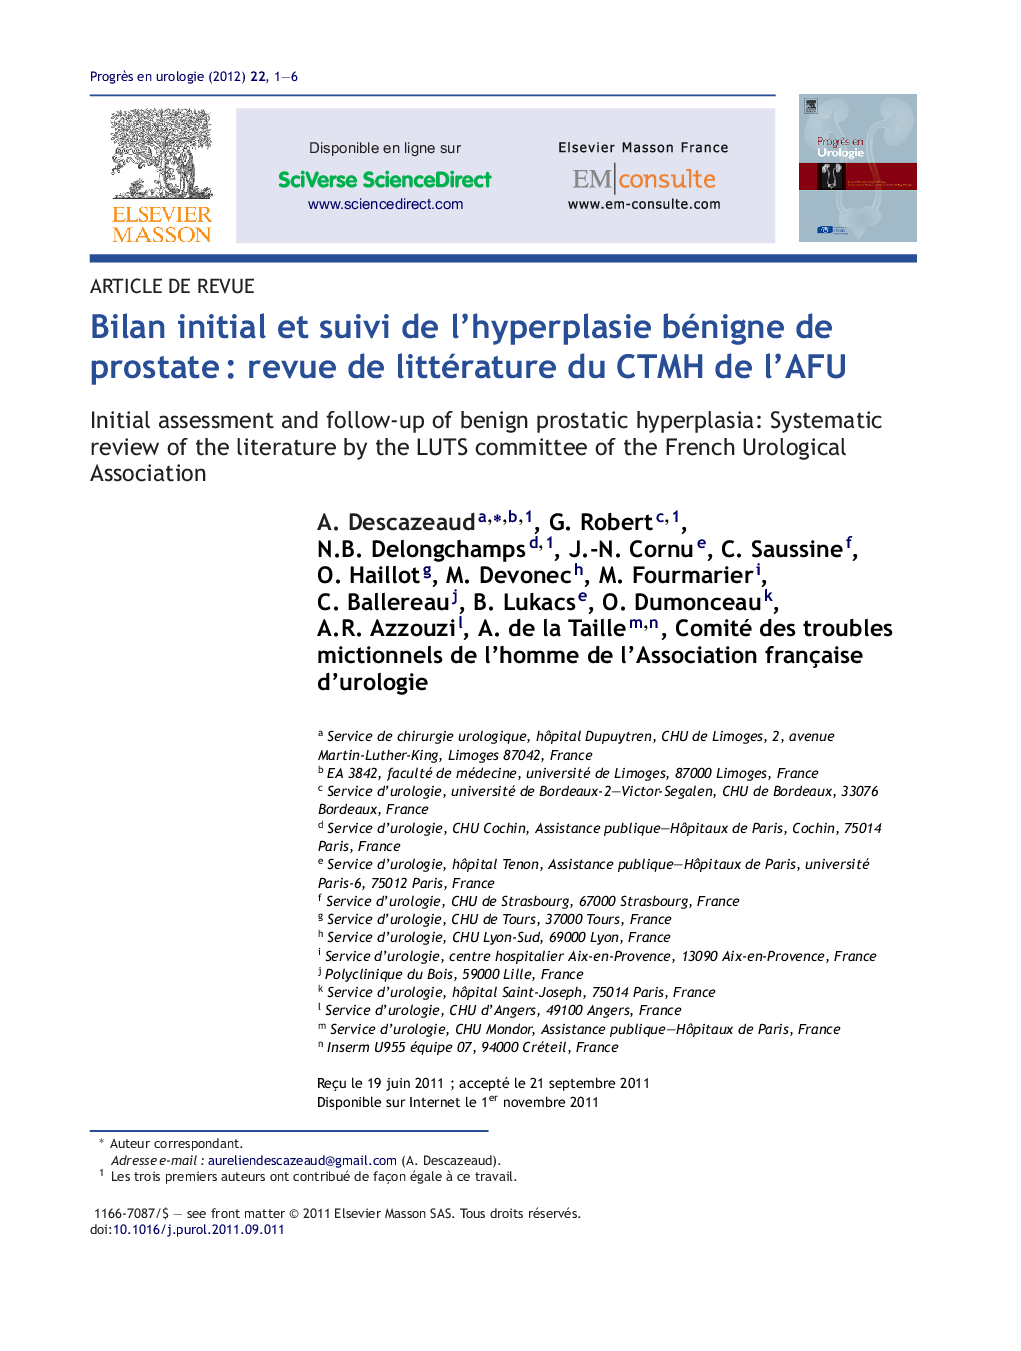 Bilan initial et suivi de l’hyperplasie bénigne de prostate : revue de littérature du CTMH de l’AFU